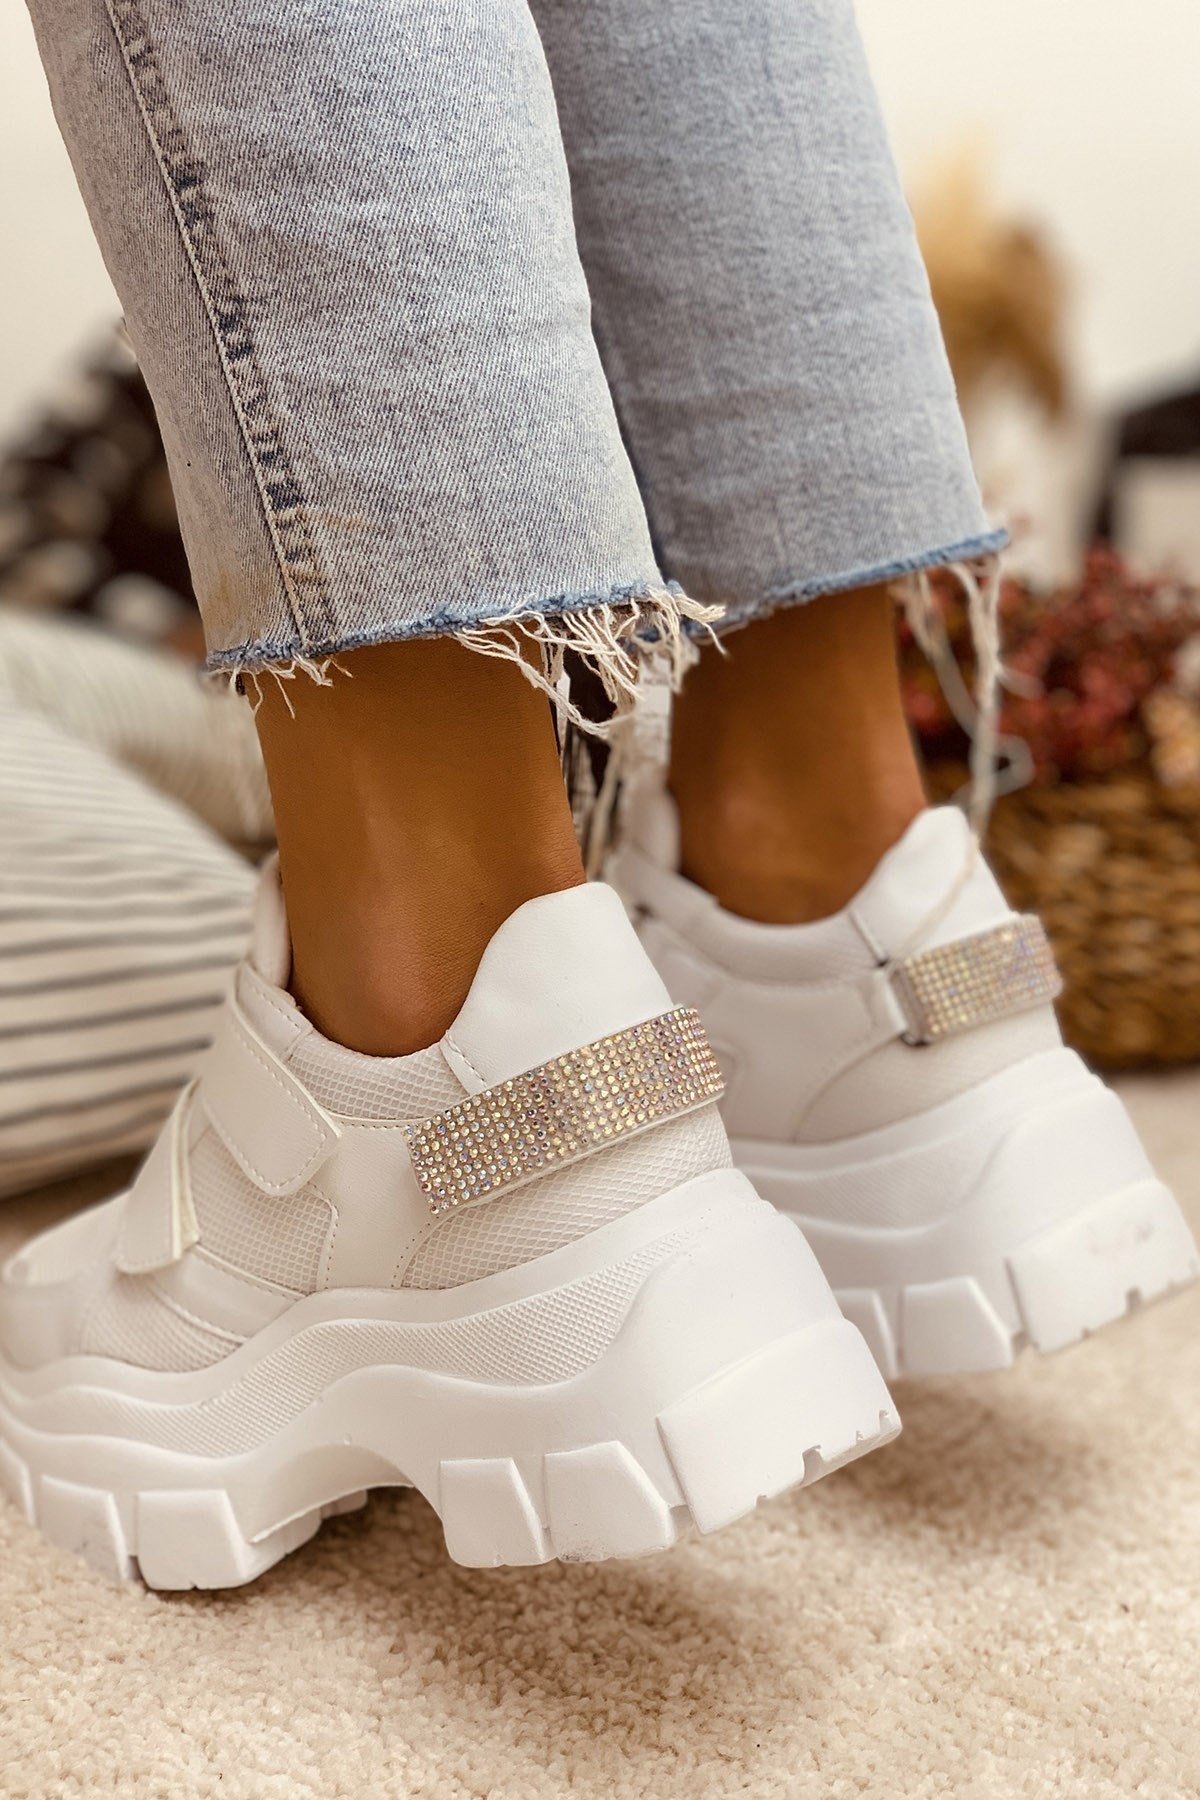 Wall Beyaz Cırtlı Taşlı 6Cm Taban Yk Bayan Spor Ayakkabı Sneakers